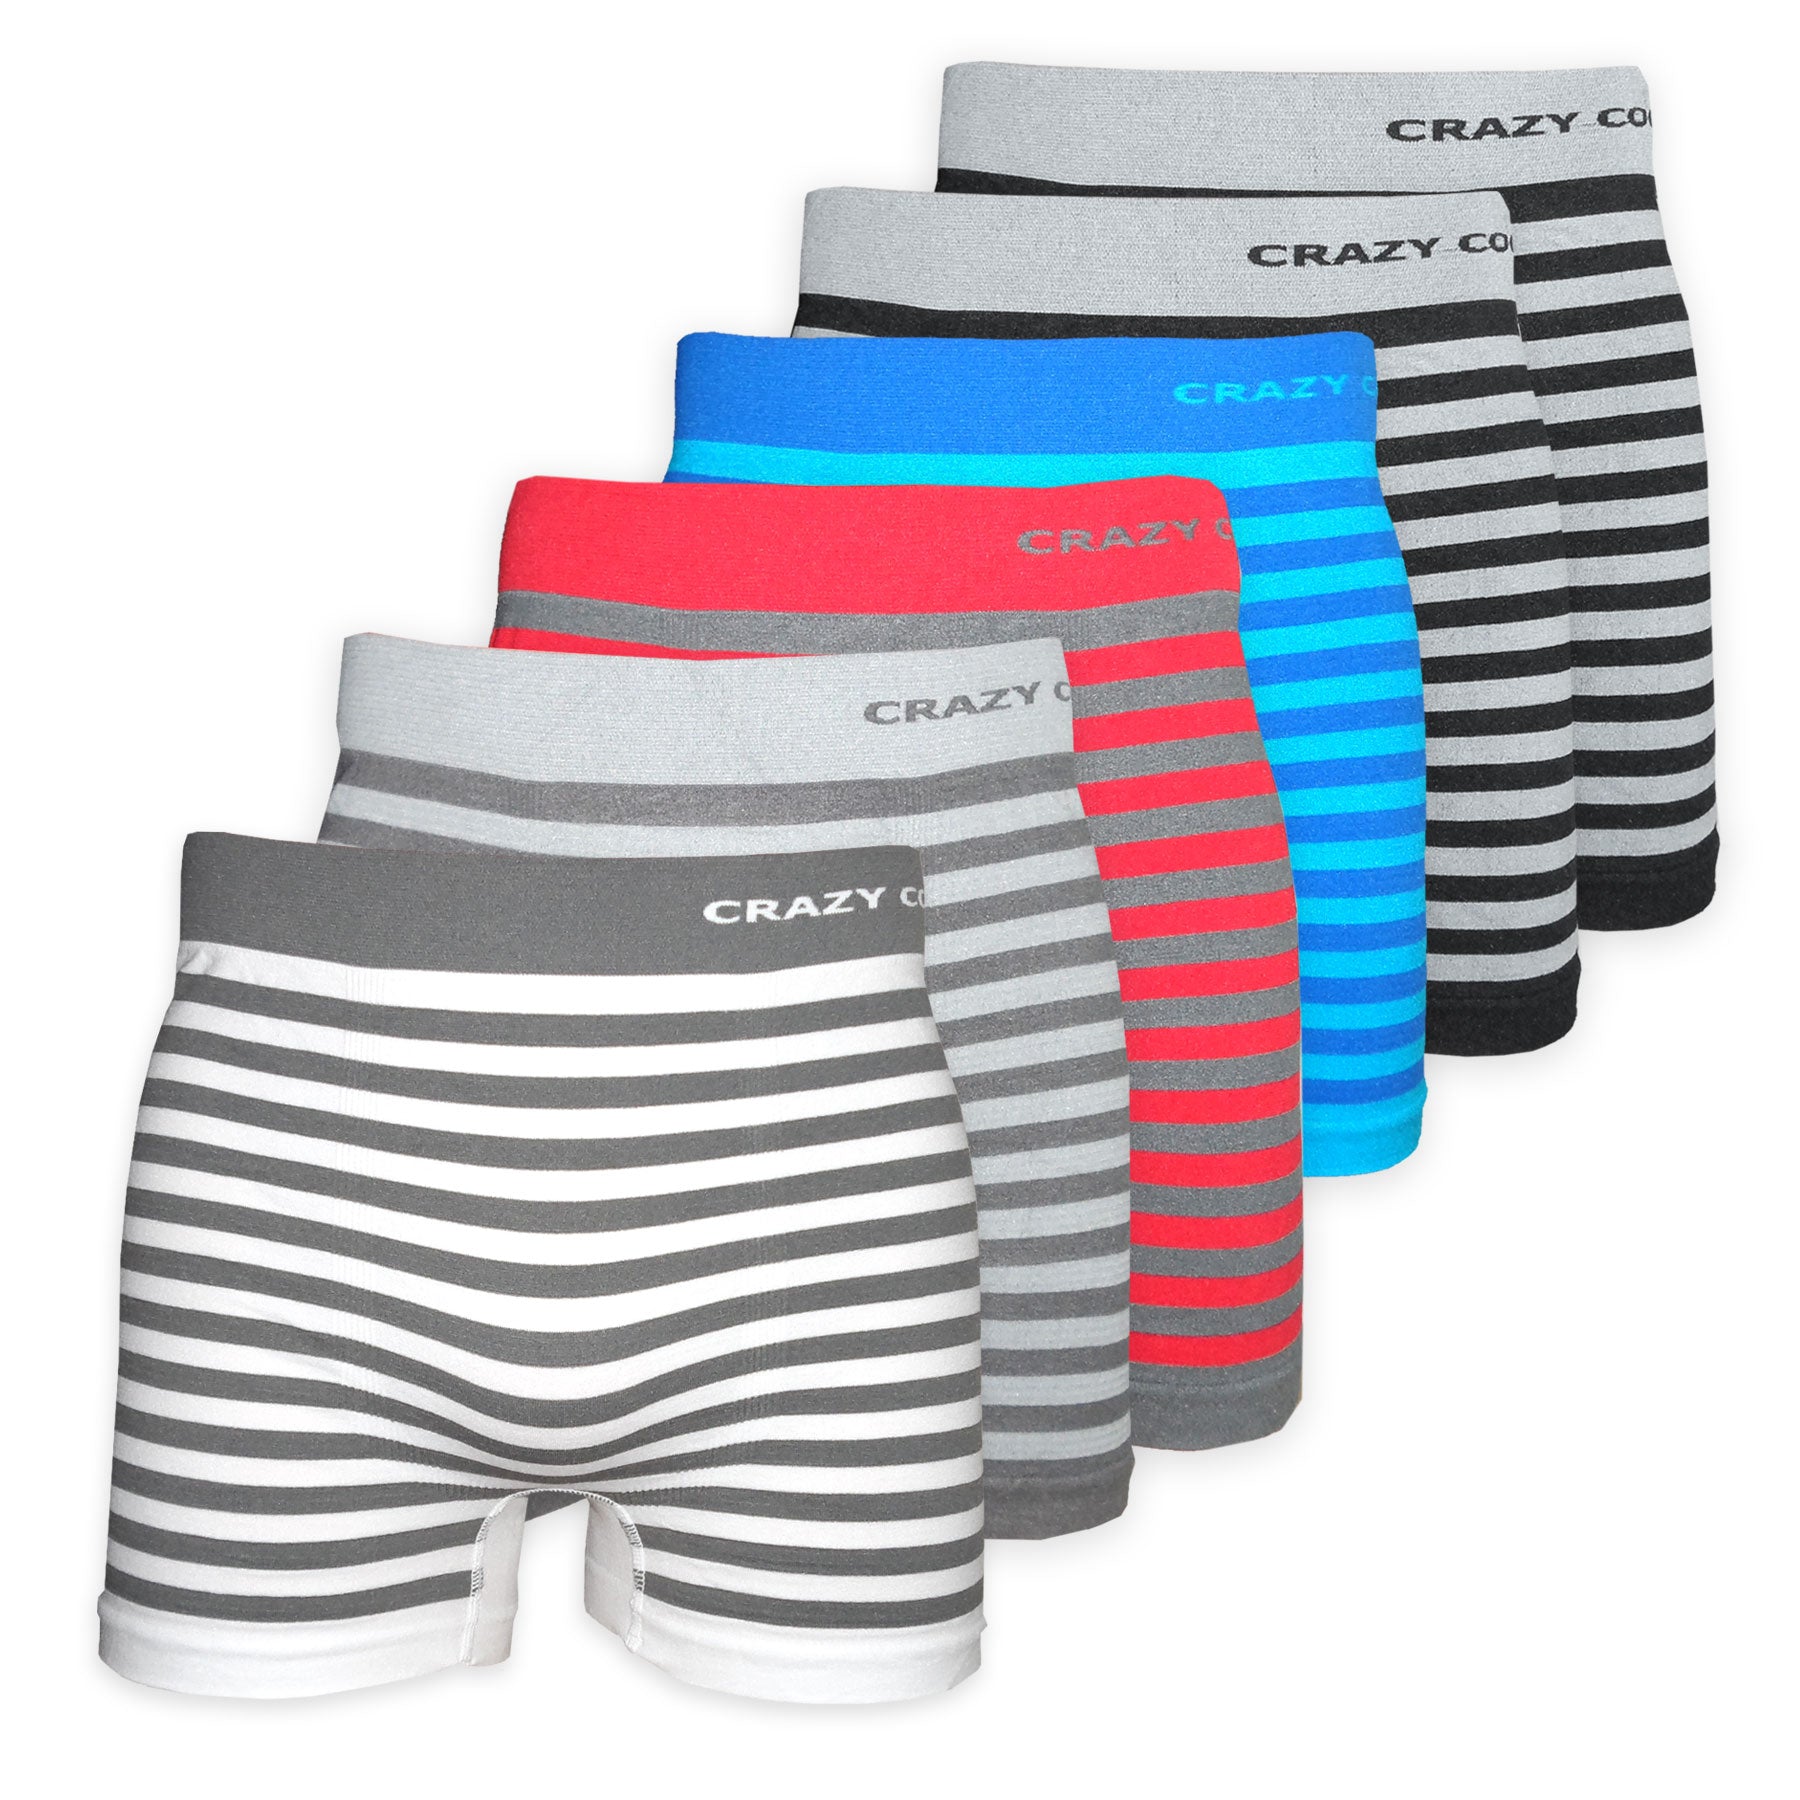 Crazy Cool Underwear® Seamless Mens Boxer Briefs Underwear 6-Pack Set Snake